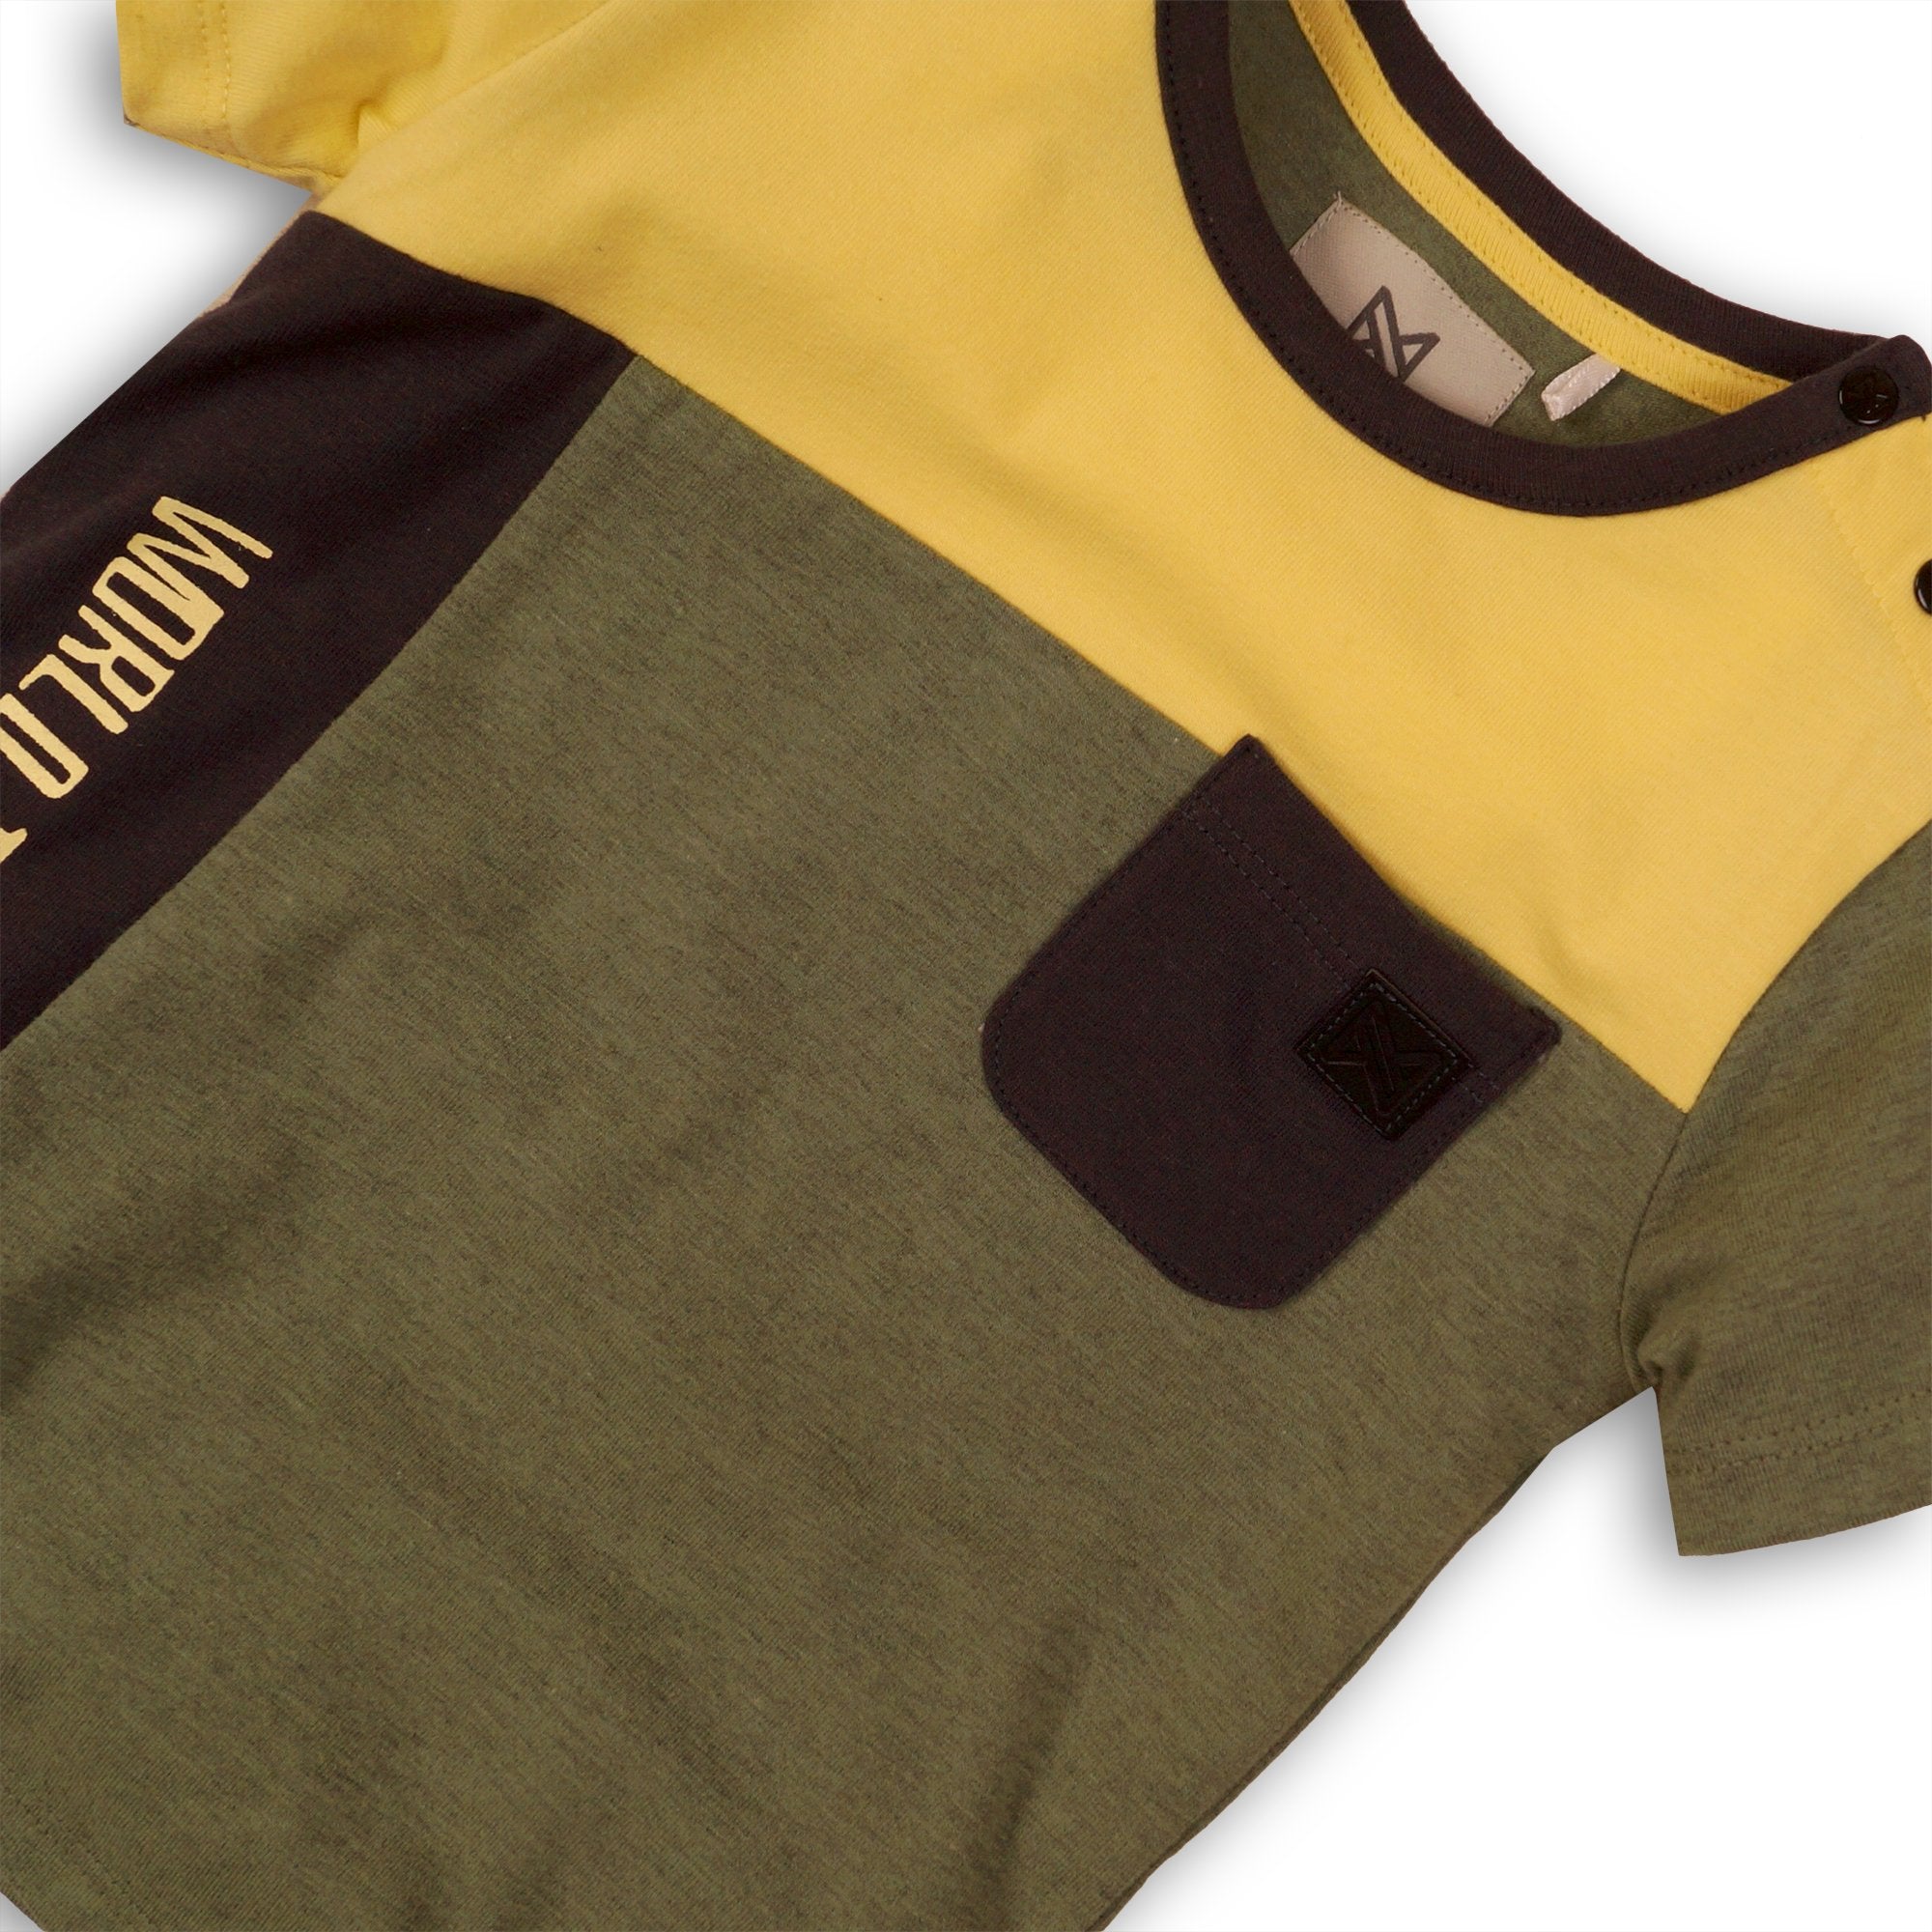 Baby Jongens Baby t-shirt van Koko Noko  in de kleur Army melee + yellow + dark grey in maat 86.